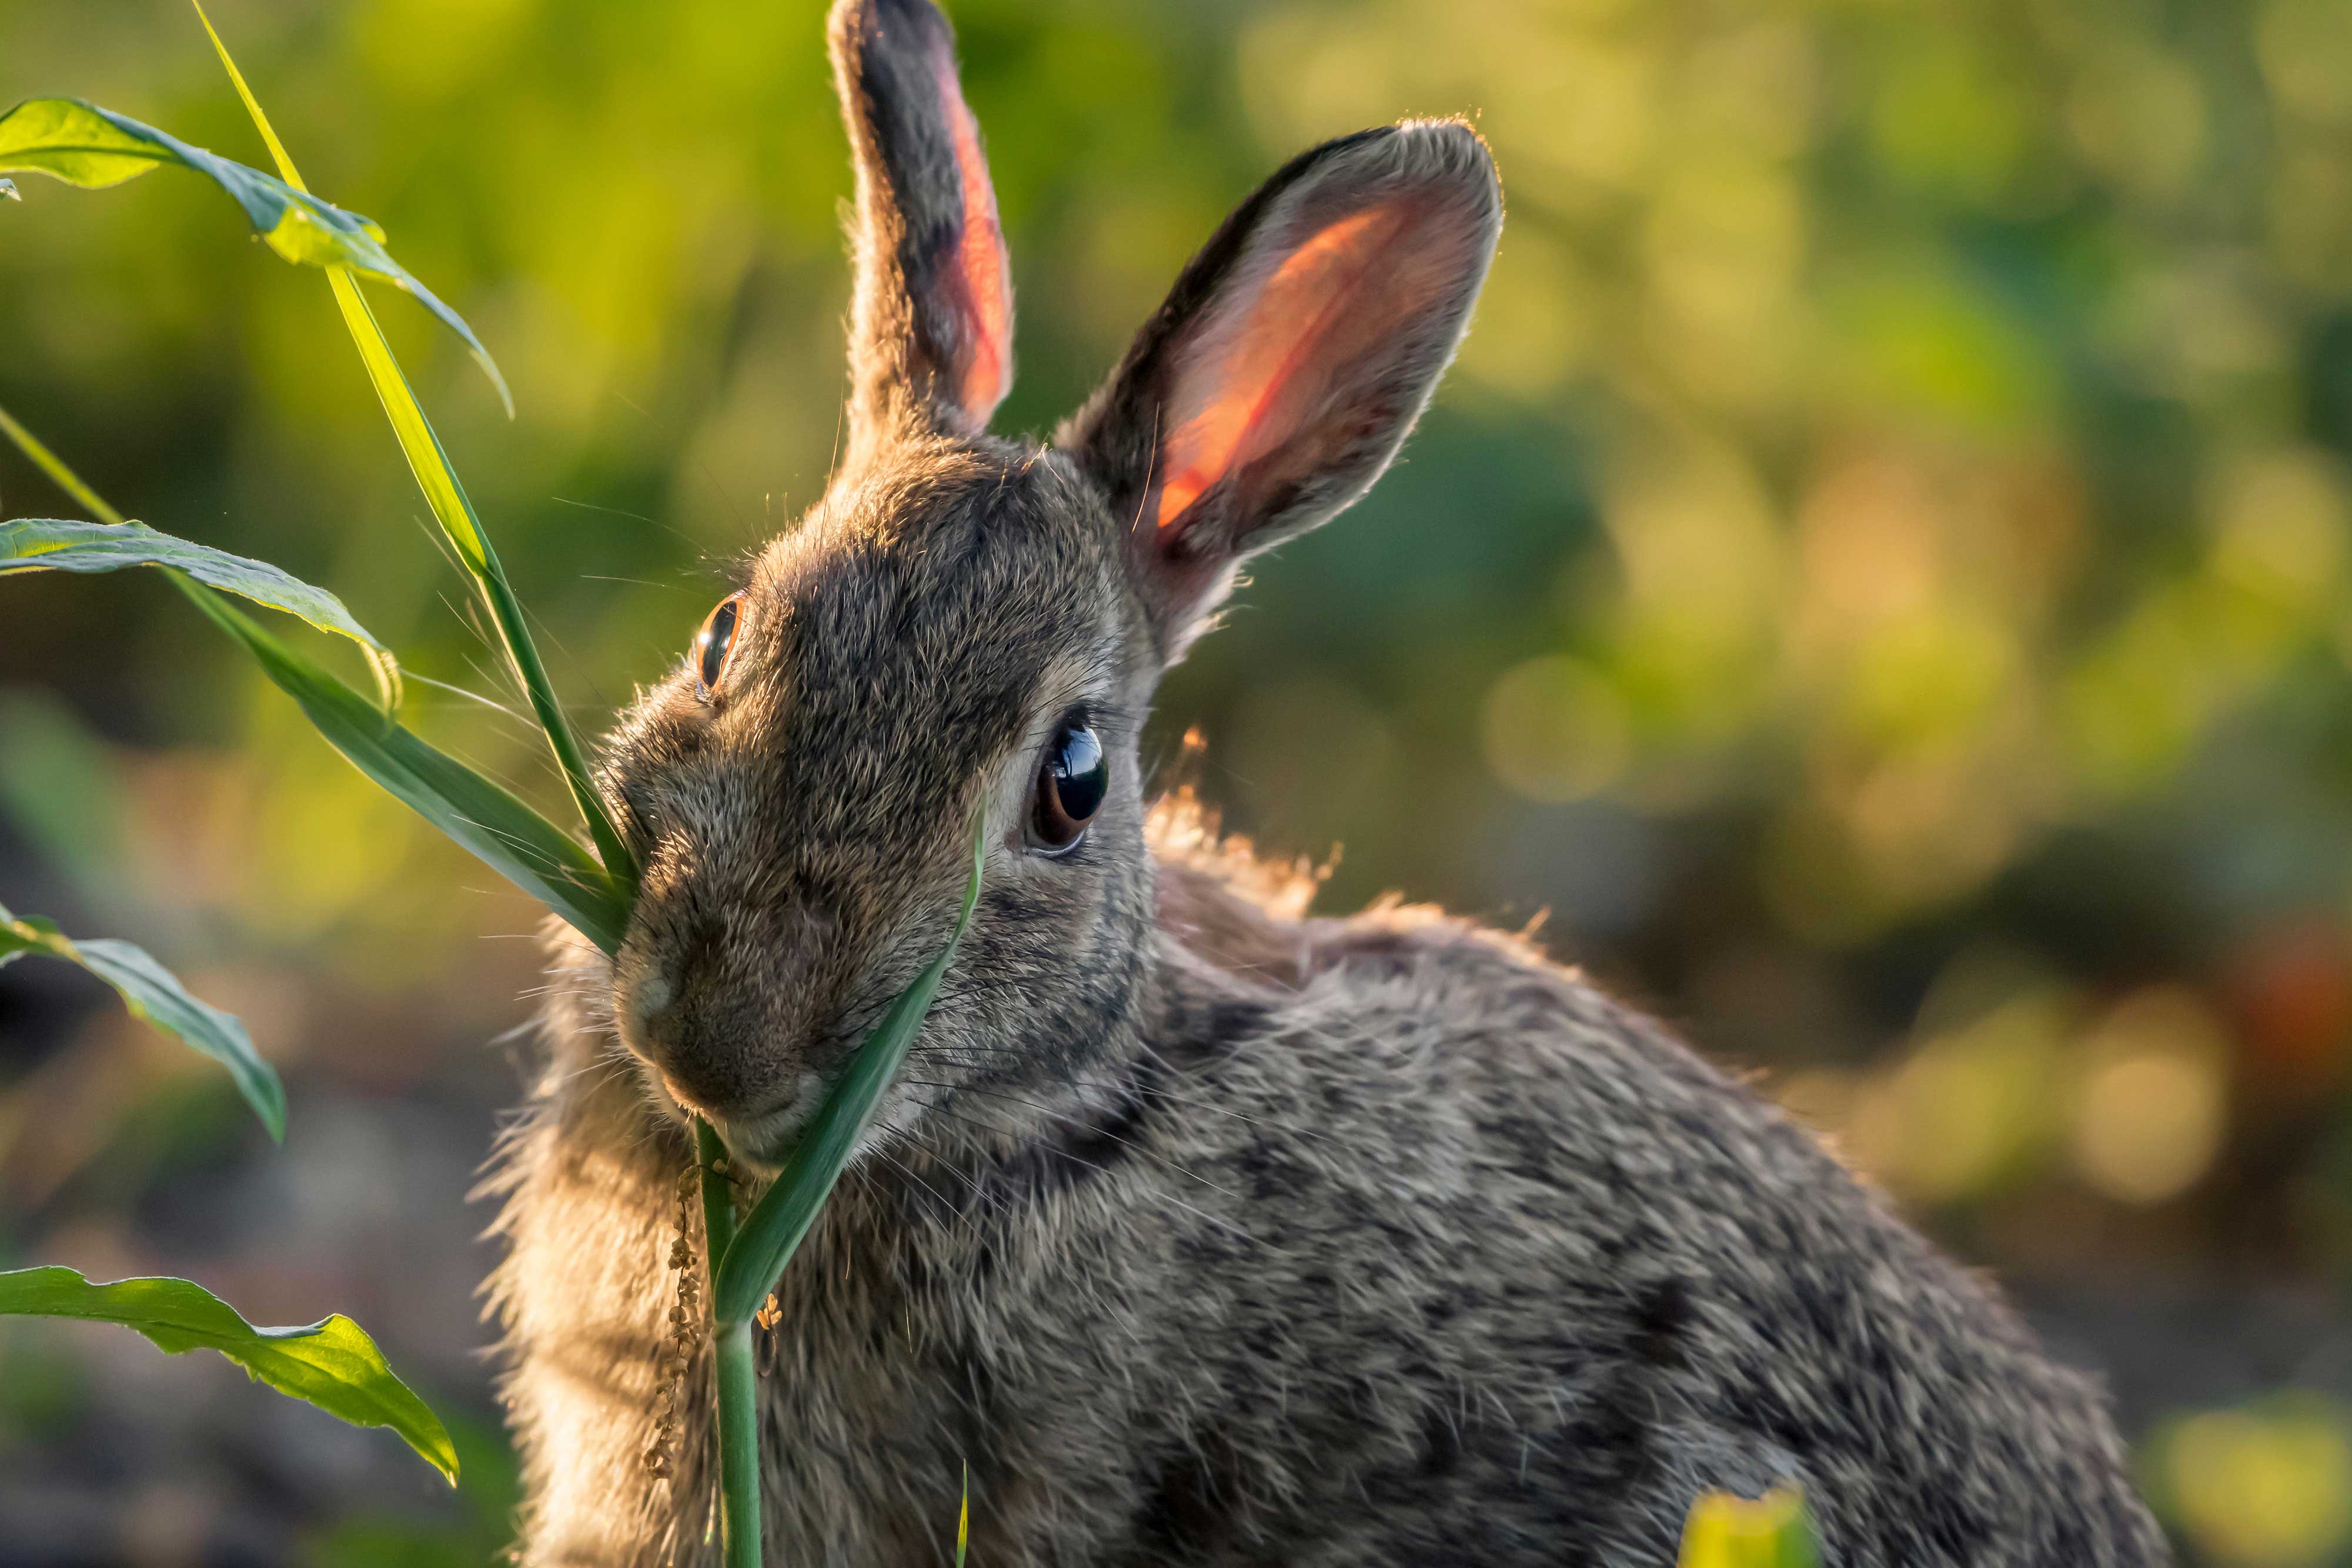 A rabbit eating grass.